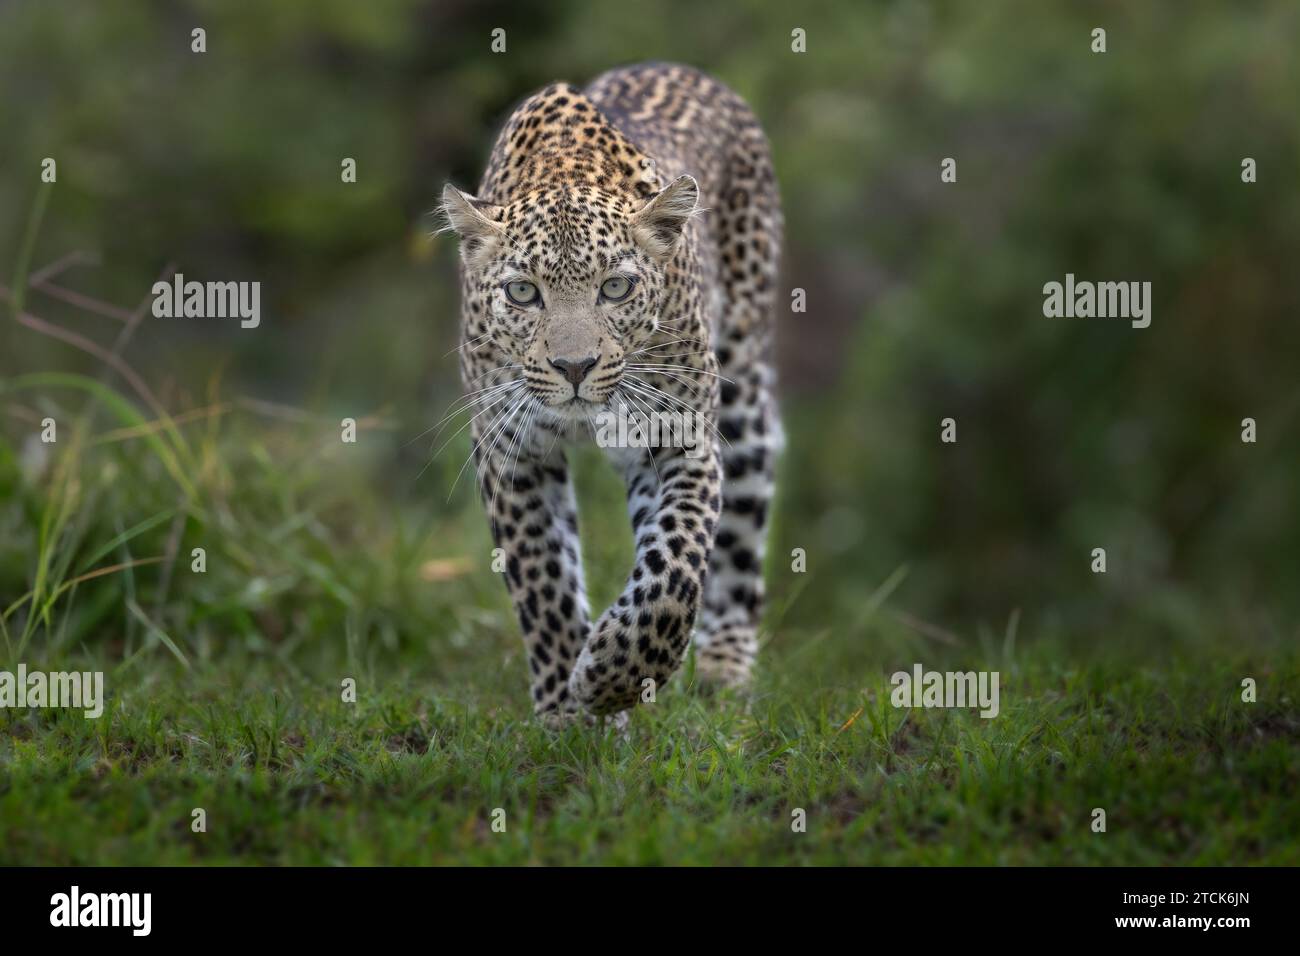 Der Leopard läuft direkt in Richtung der Kamera, Masai Mara, Olare Motorogi Conservancy, Kenia. Stockfoto